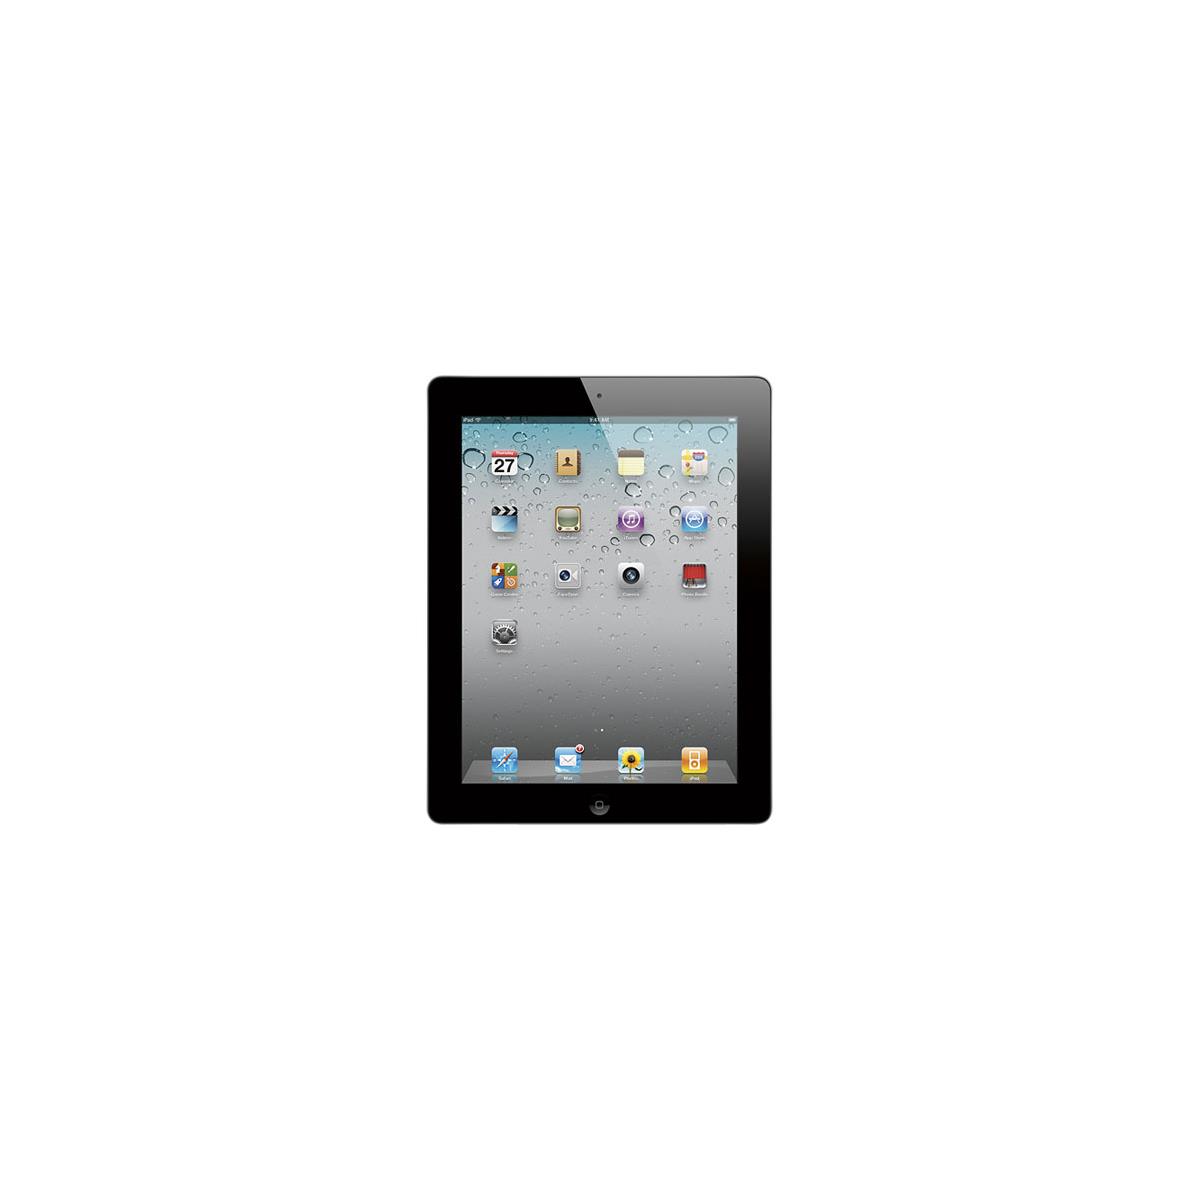 Apple 16GB iPad 2 Tablet with 802.11n Wi-Fi, Black -  MC954LL/A